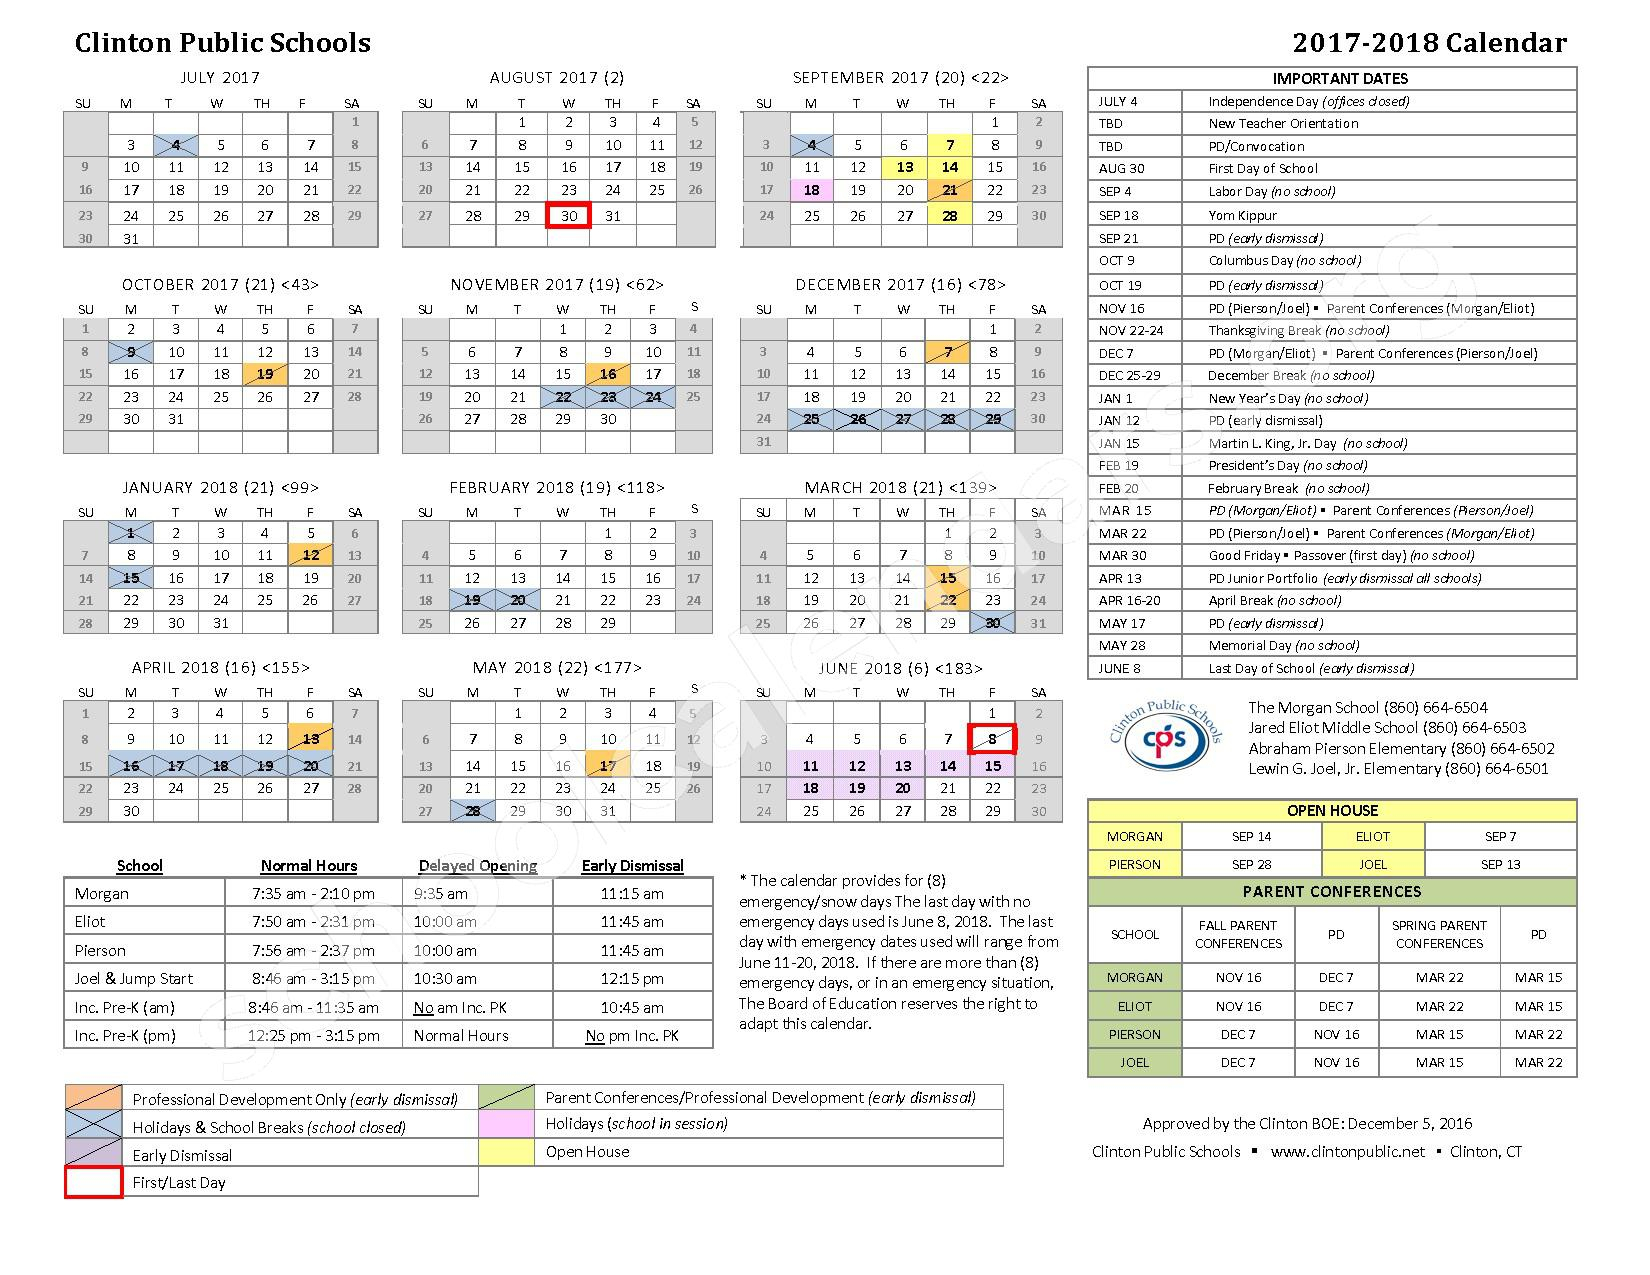 Clinton Public Schools Calendars Clinton CT